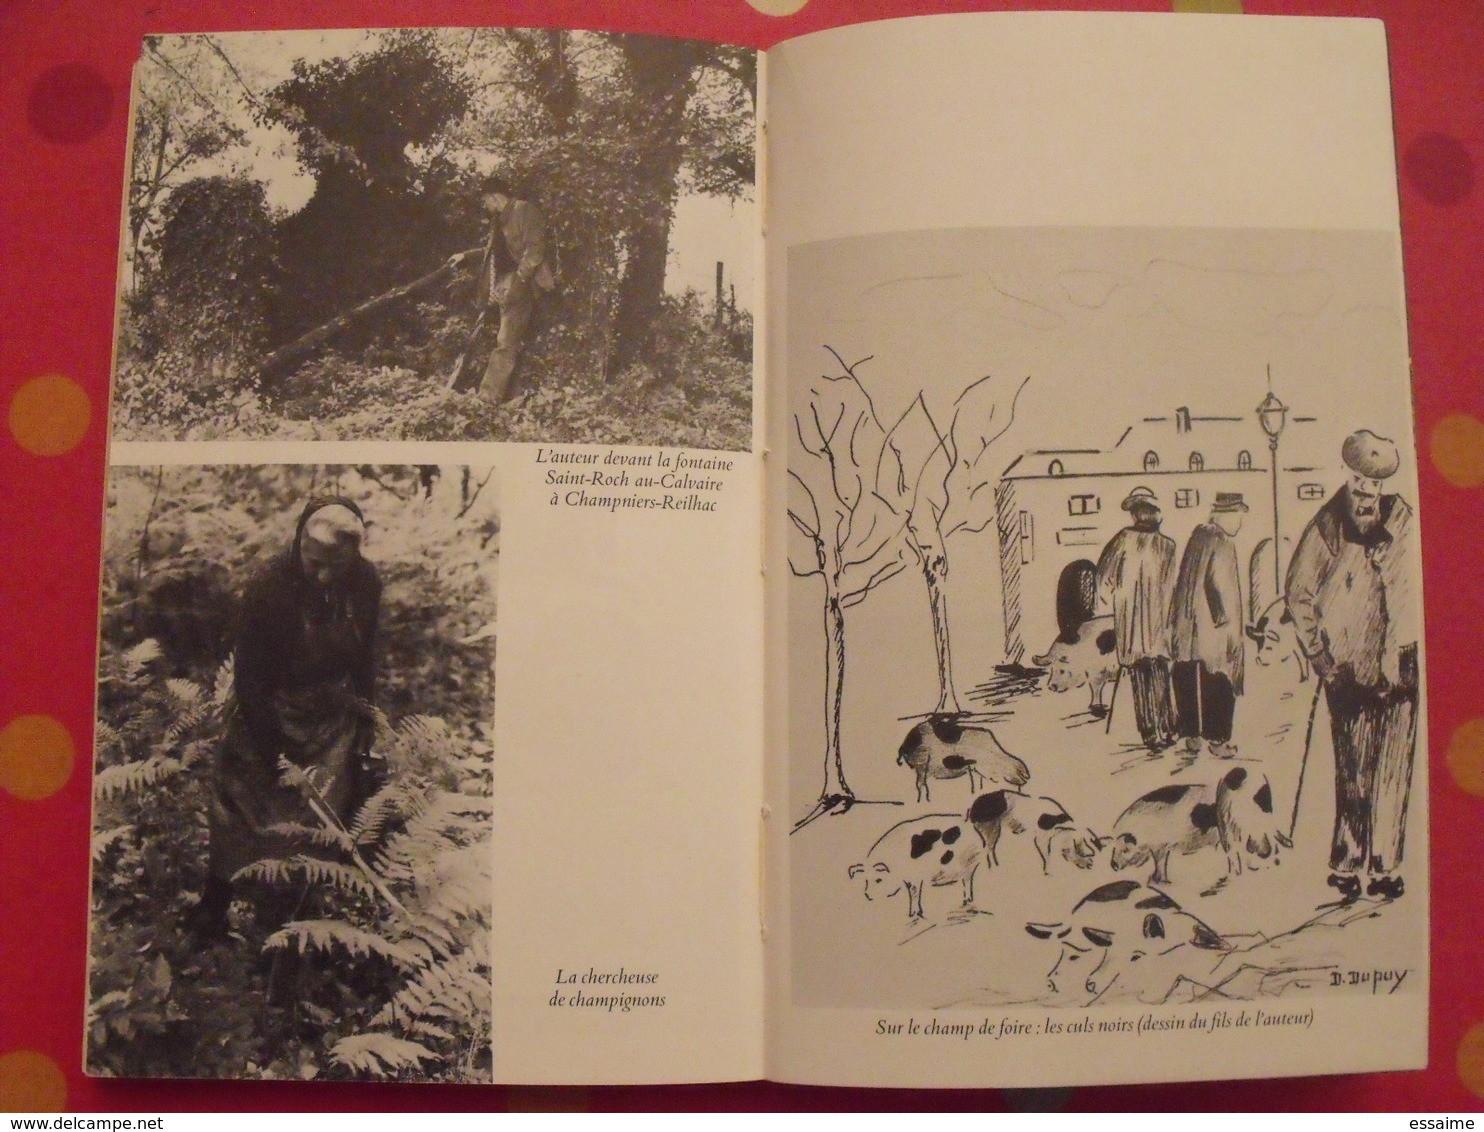 L'Albine. Fernand Dupuy. Scènes de la vie en Limousin et en Périgord vert. Fayard 1977. bien illustré